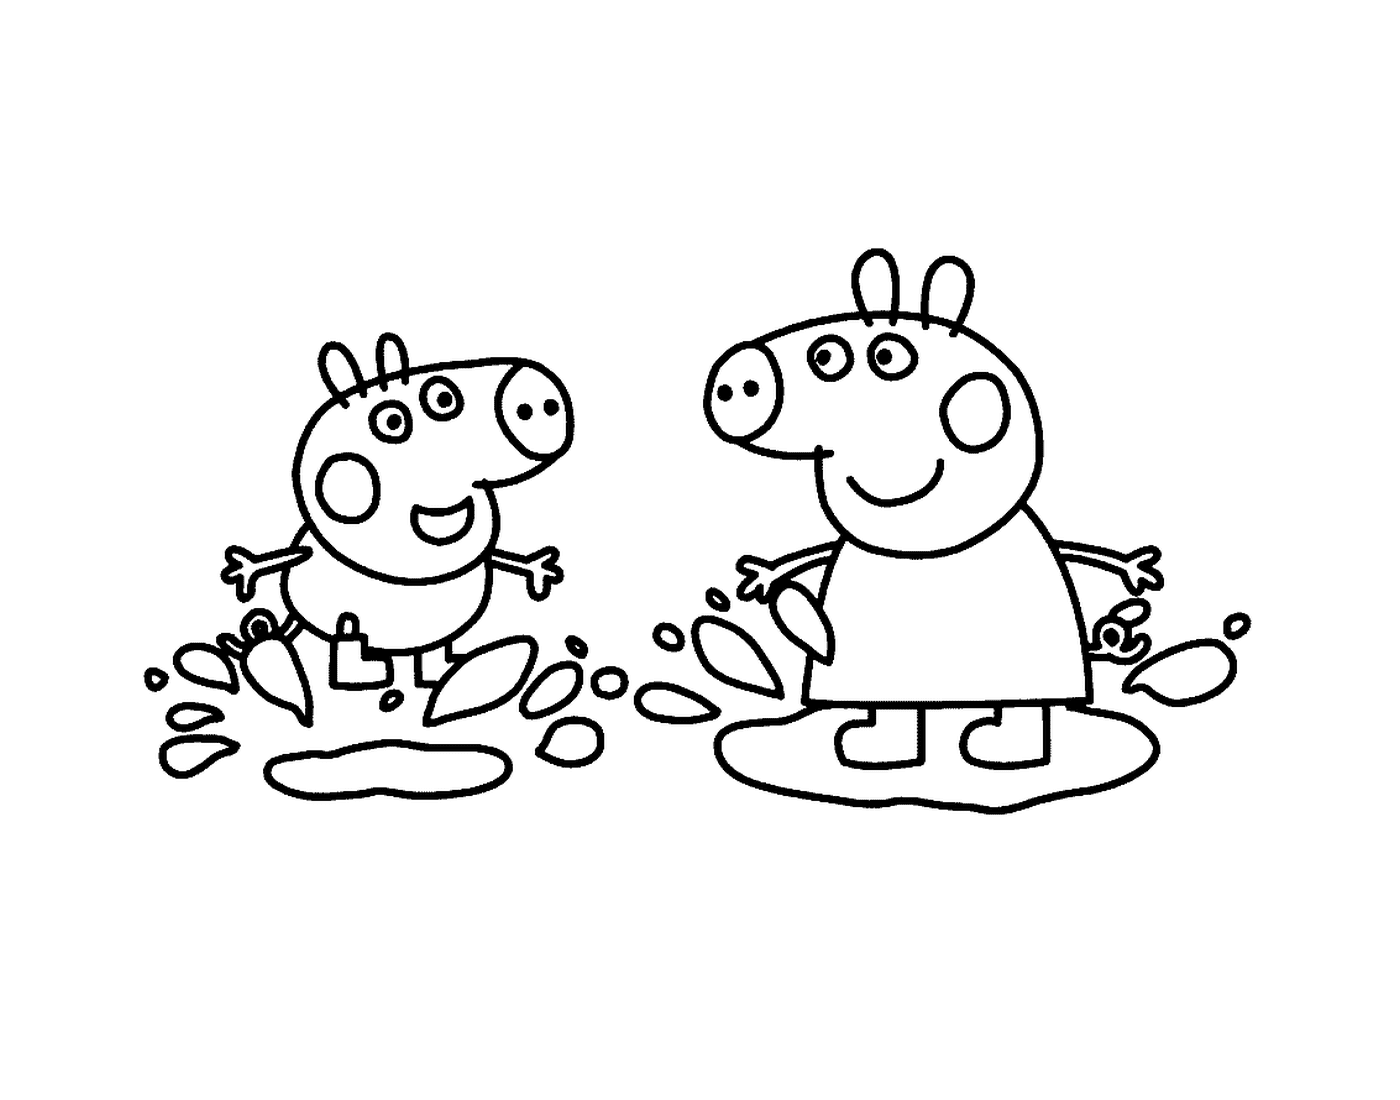  Ein paar Peppa-Pig-Charaktere nebeneinander 